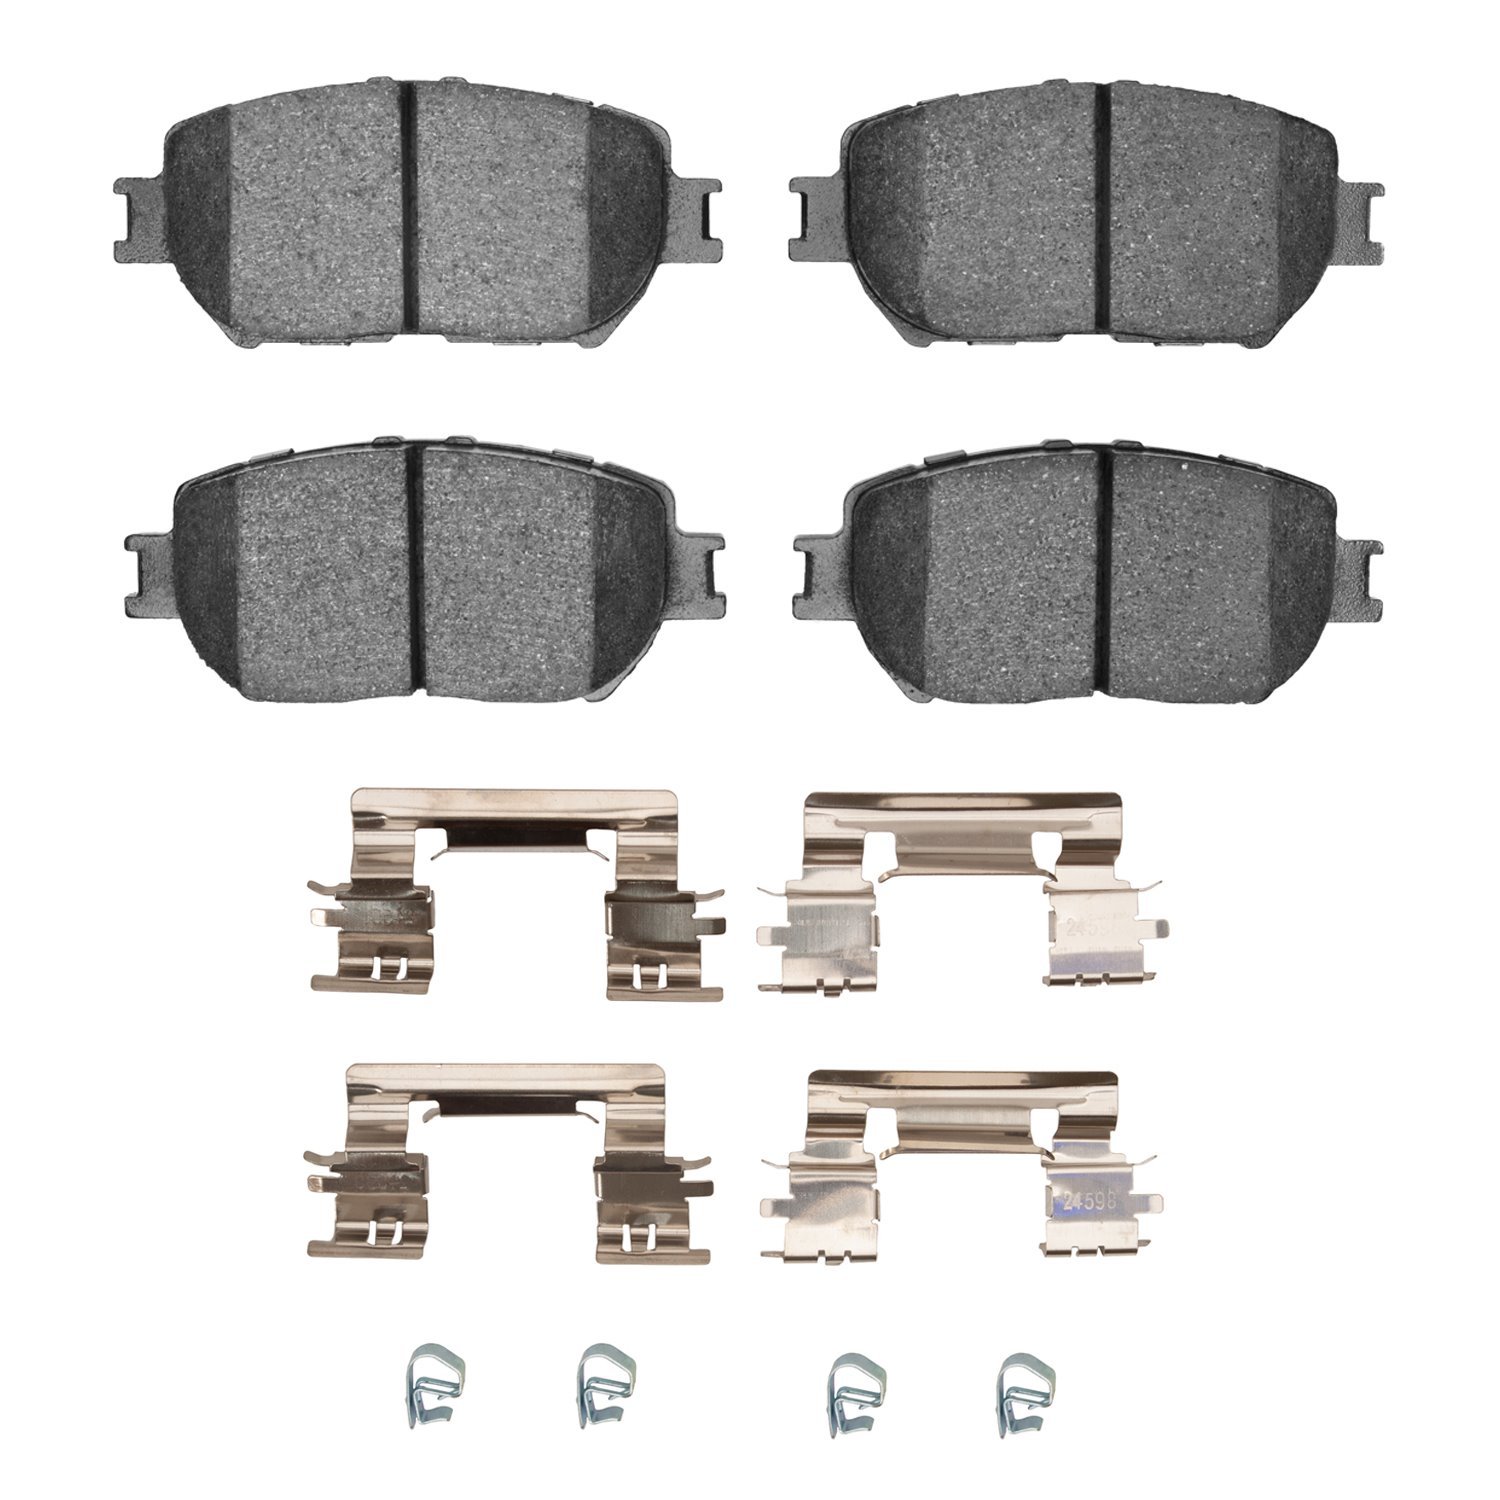 1310-0908-02 3000-Series Ceramic Brake Pads & Hardware Kit, 2006-2015 Lexus/Toyota/Scion, Position: Front